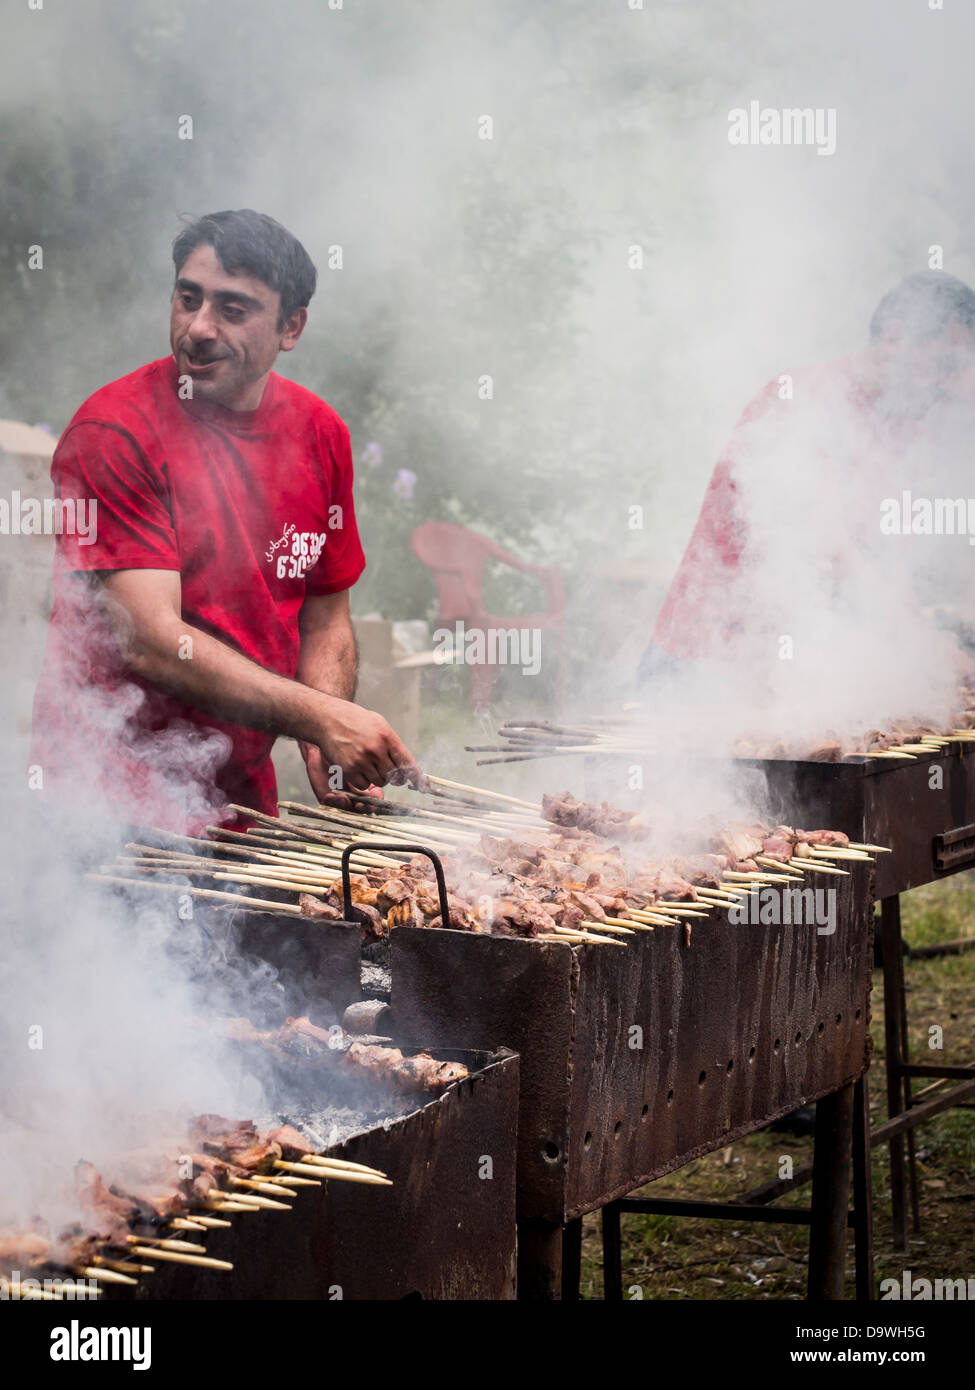 Géorgiens préparer un de leurs plats nationaux, l'mtsvadi (grillades brochette de viande), sur les jeunes Festival du vin à Tbilissi. Banque D'Images